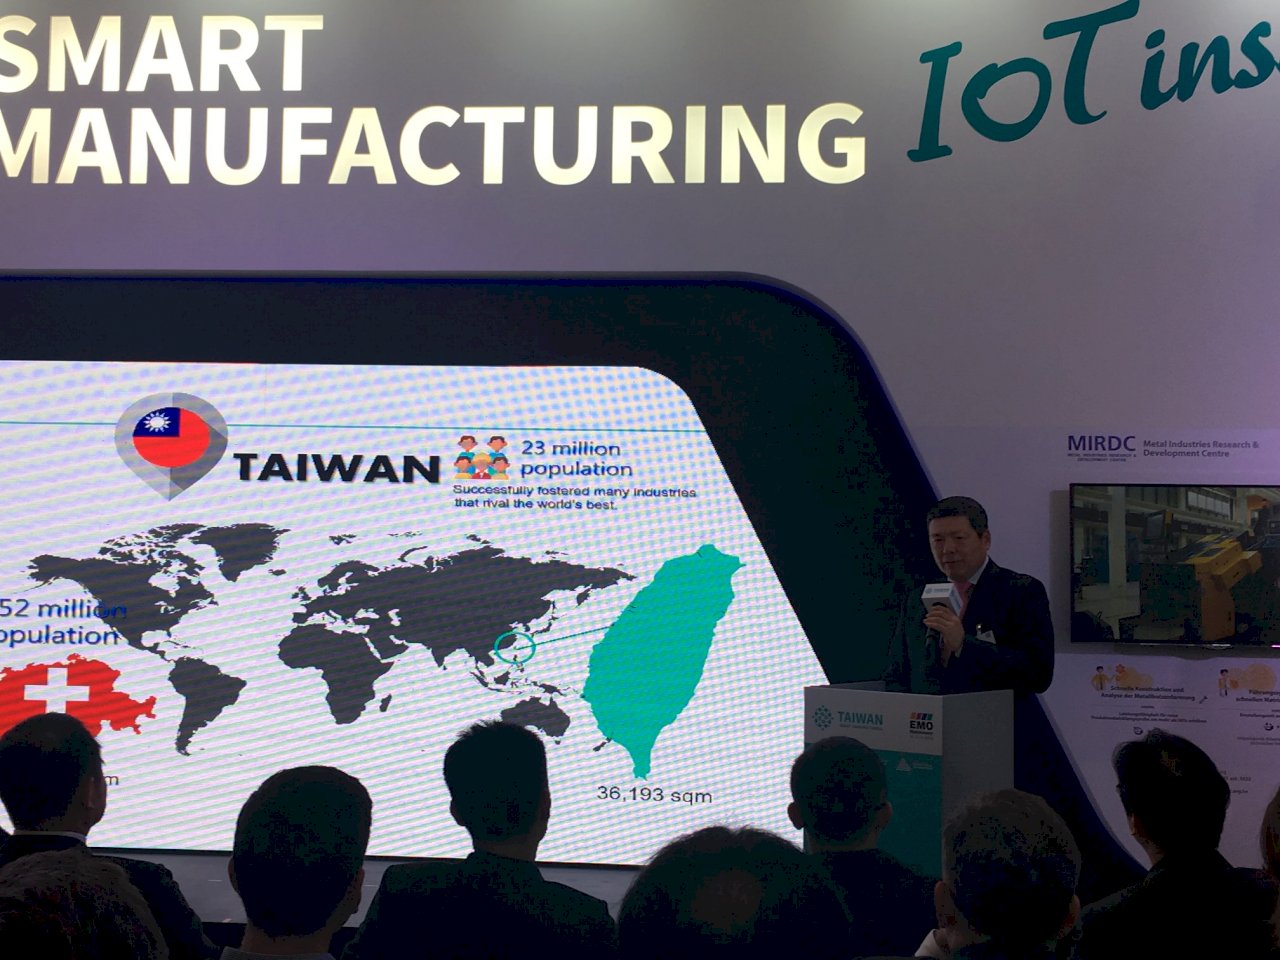 台灣智慧機械館首登歐洲大展 貿協力推台灣智機品牌